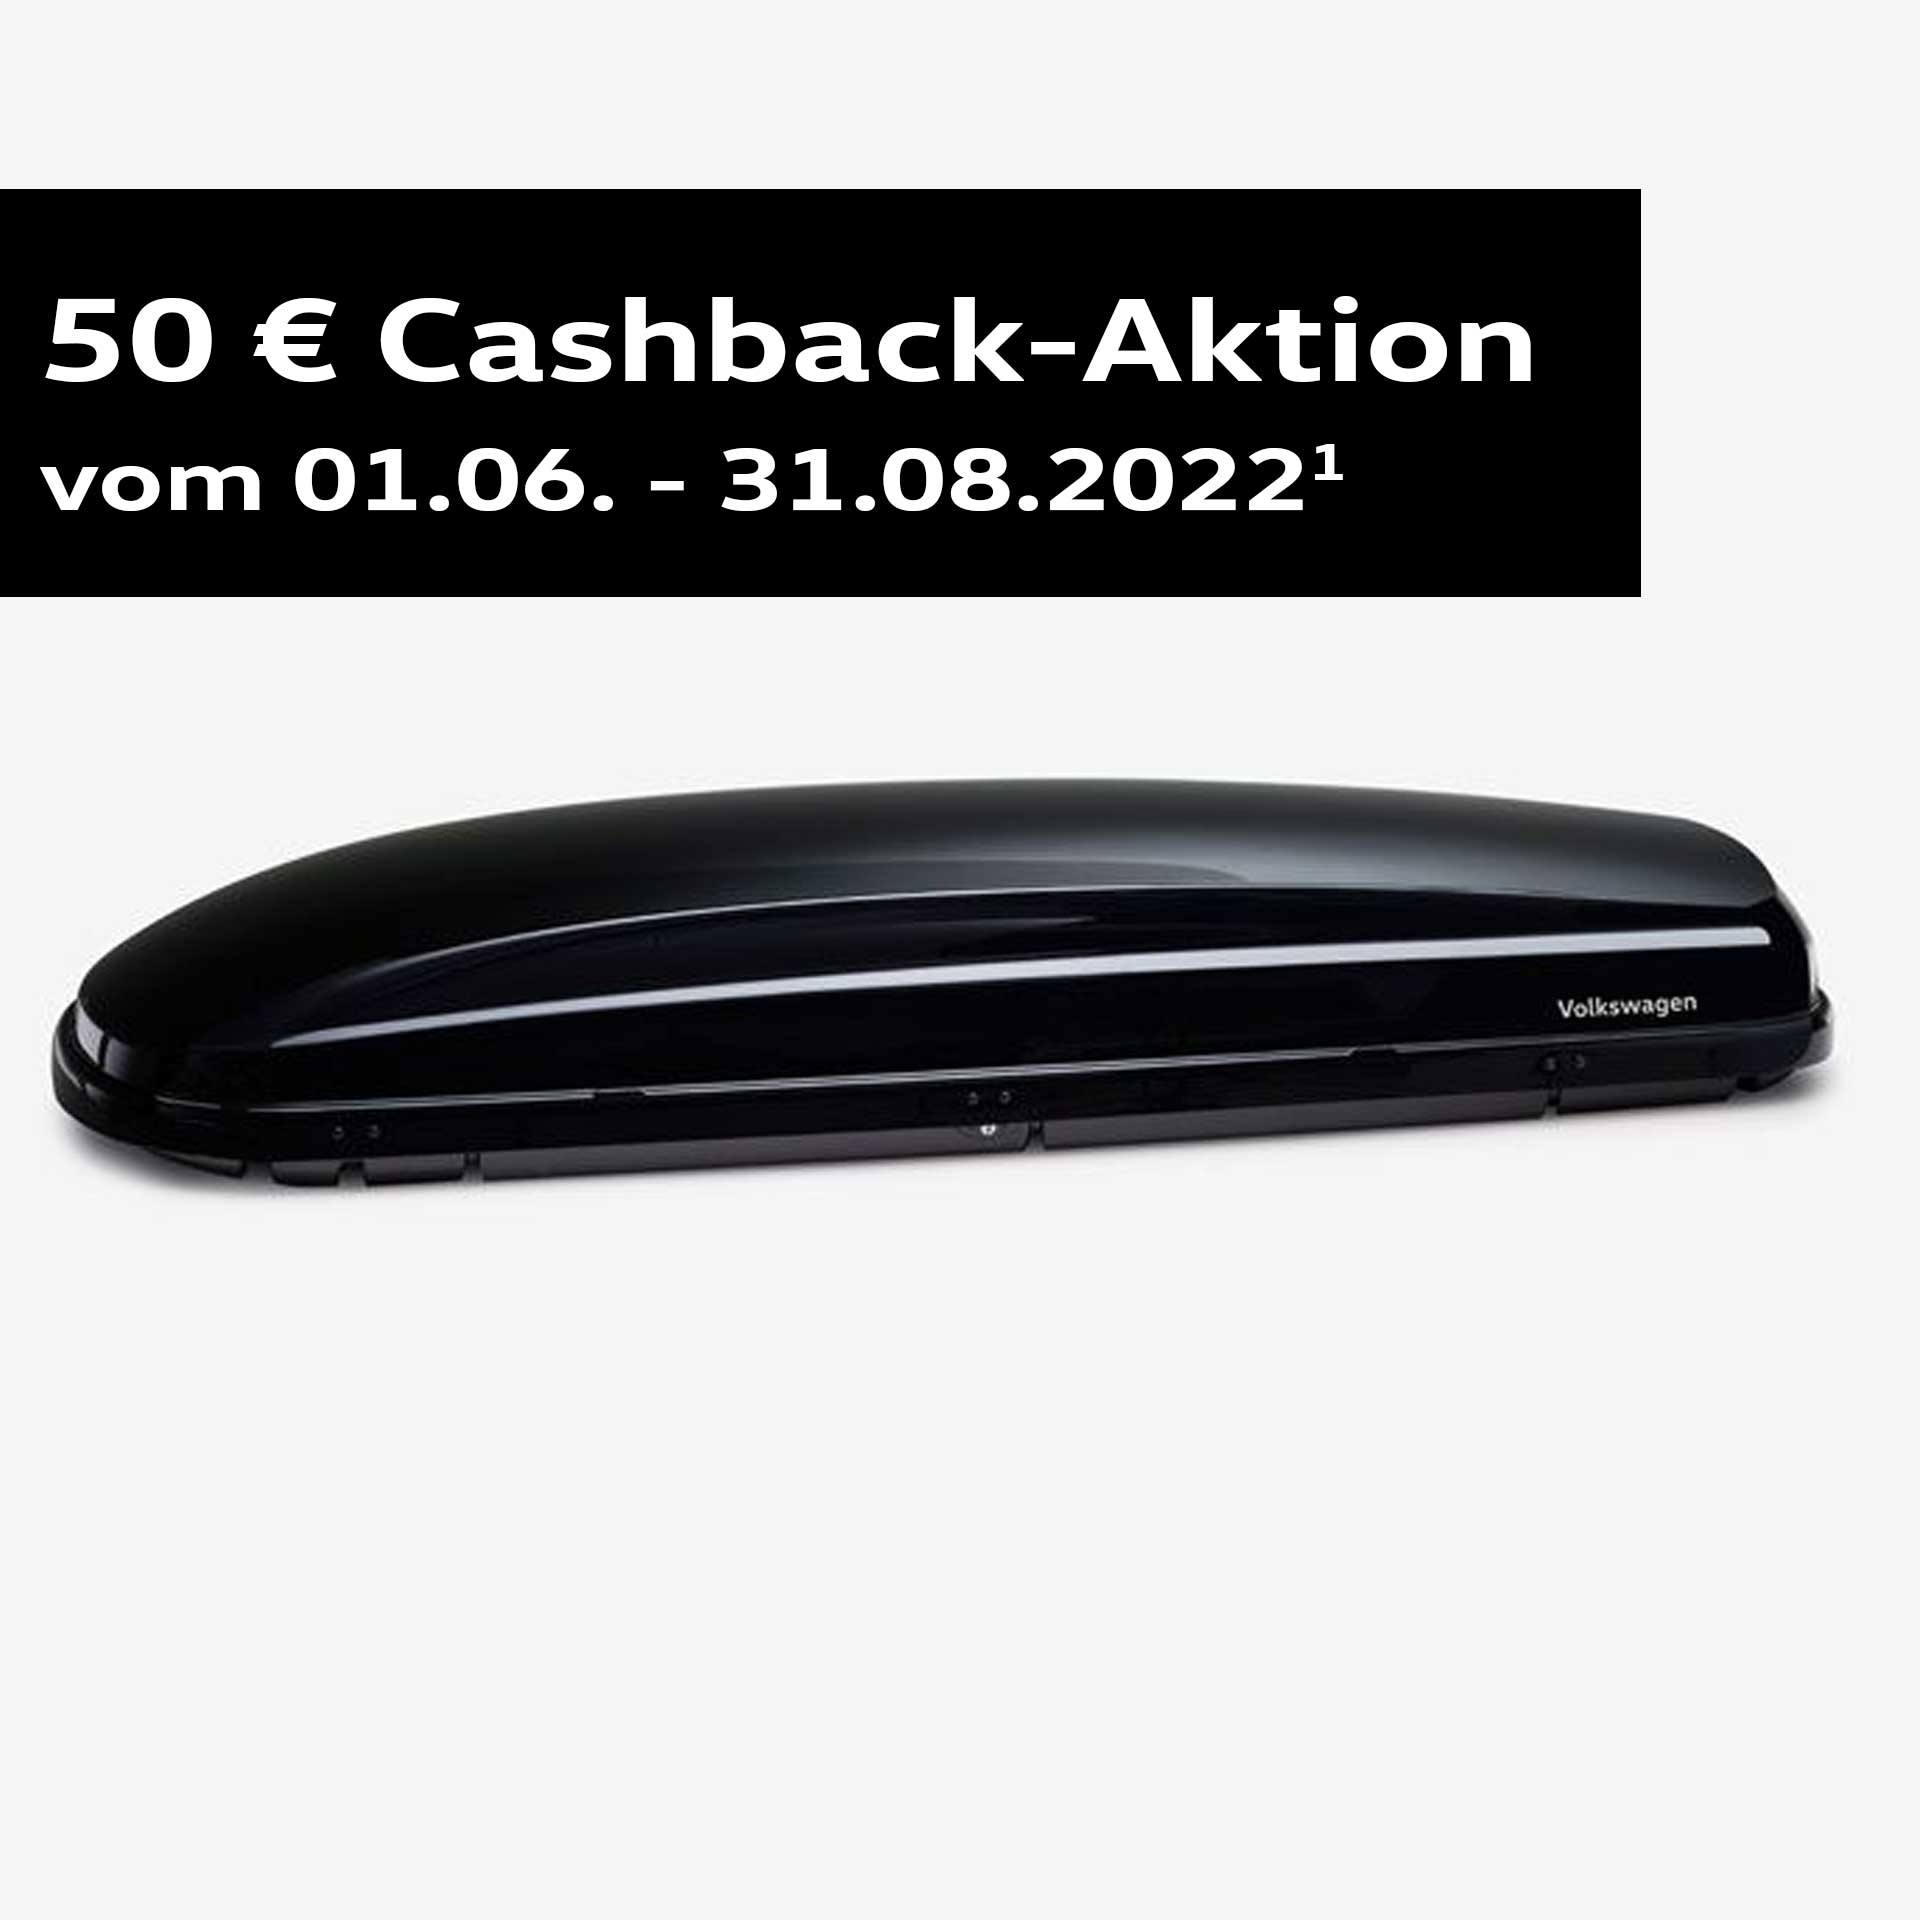 Volkswagen Dachbox Basic schwarz 340 l | 50 € Cashback 000071200